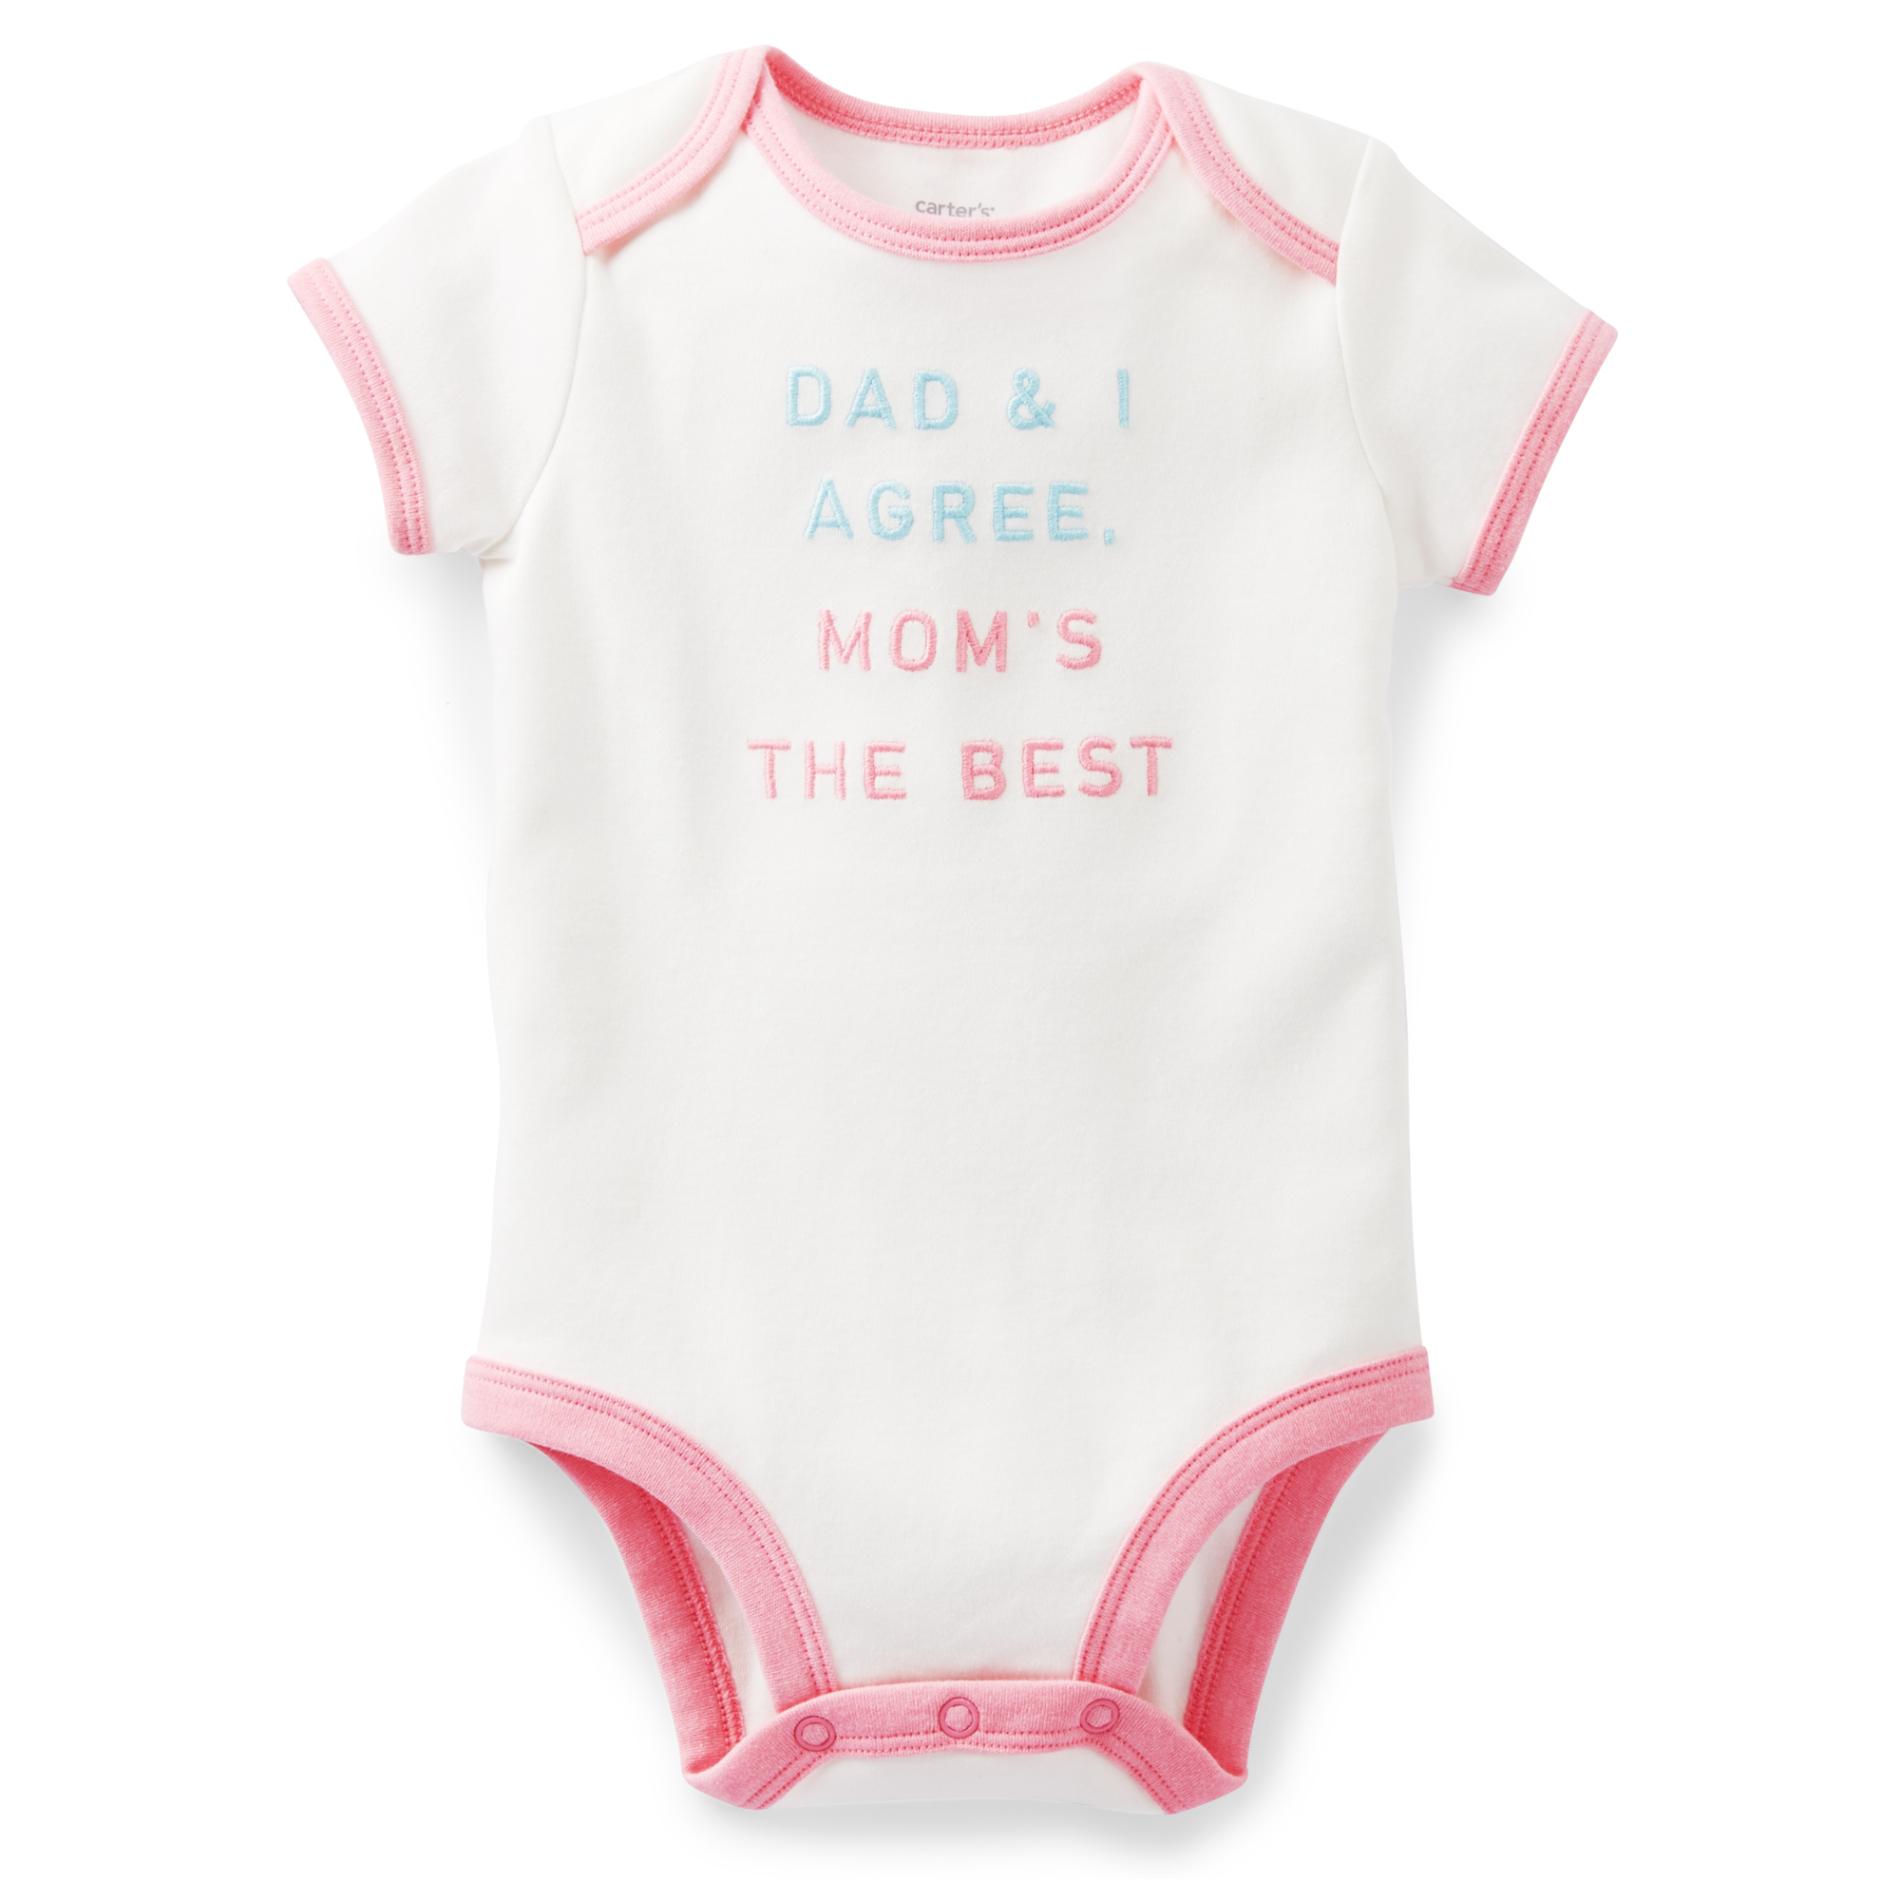 Carter's Newborn & Infant Girl's Bodysuit - Mom's the Best